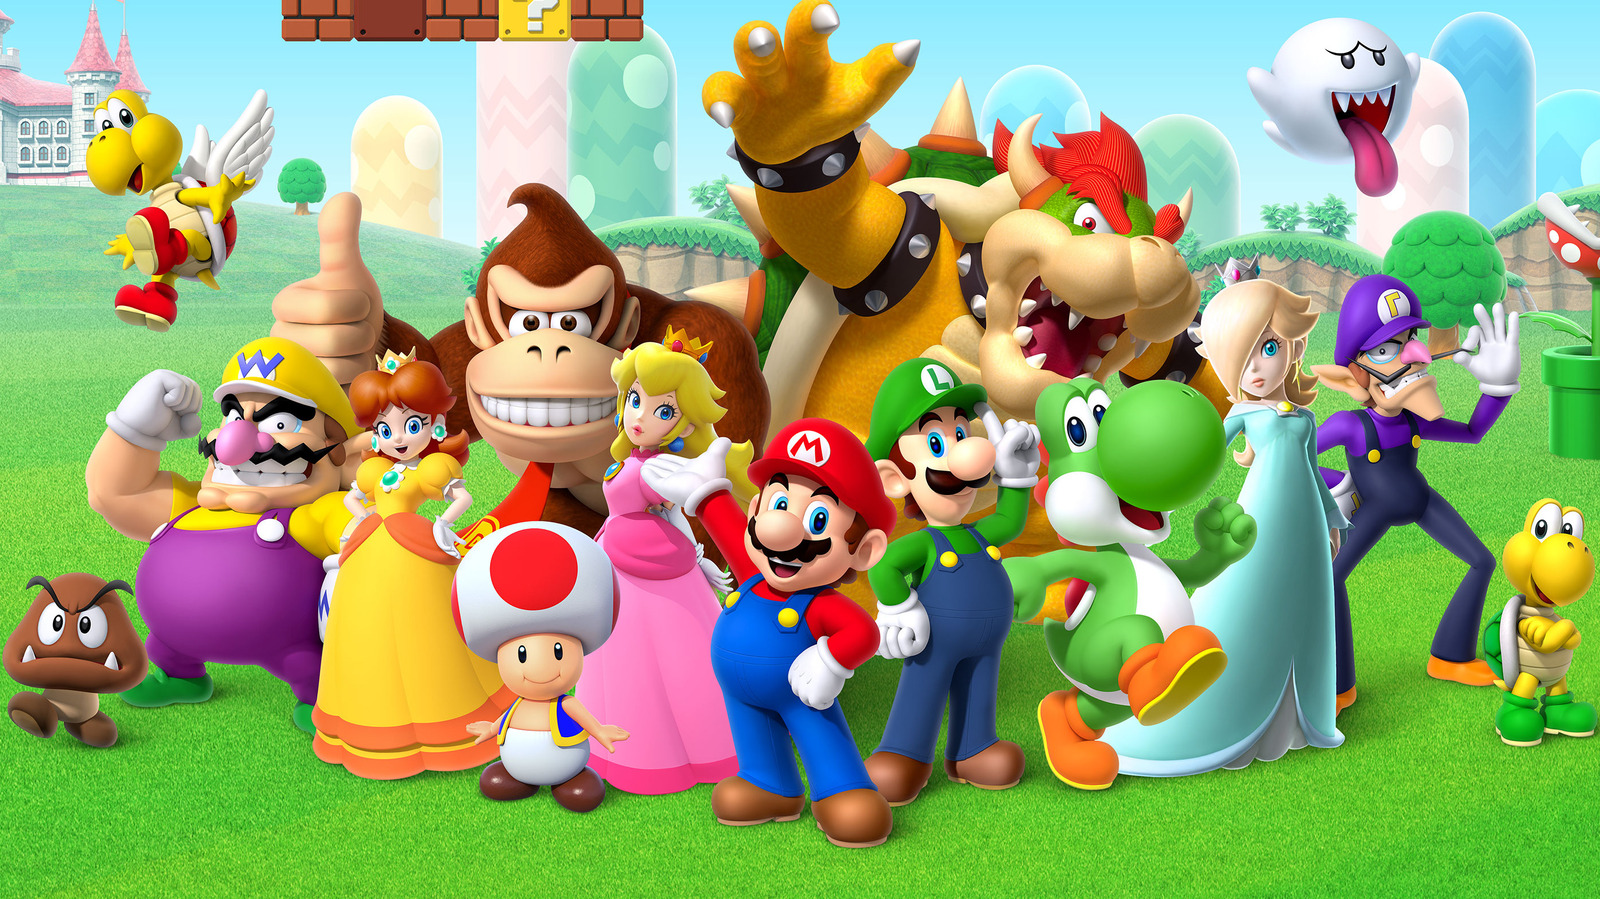 Azijn Extreem voordat Super Mario Bros. Release Date, Cast, And More